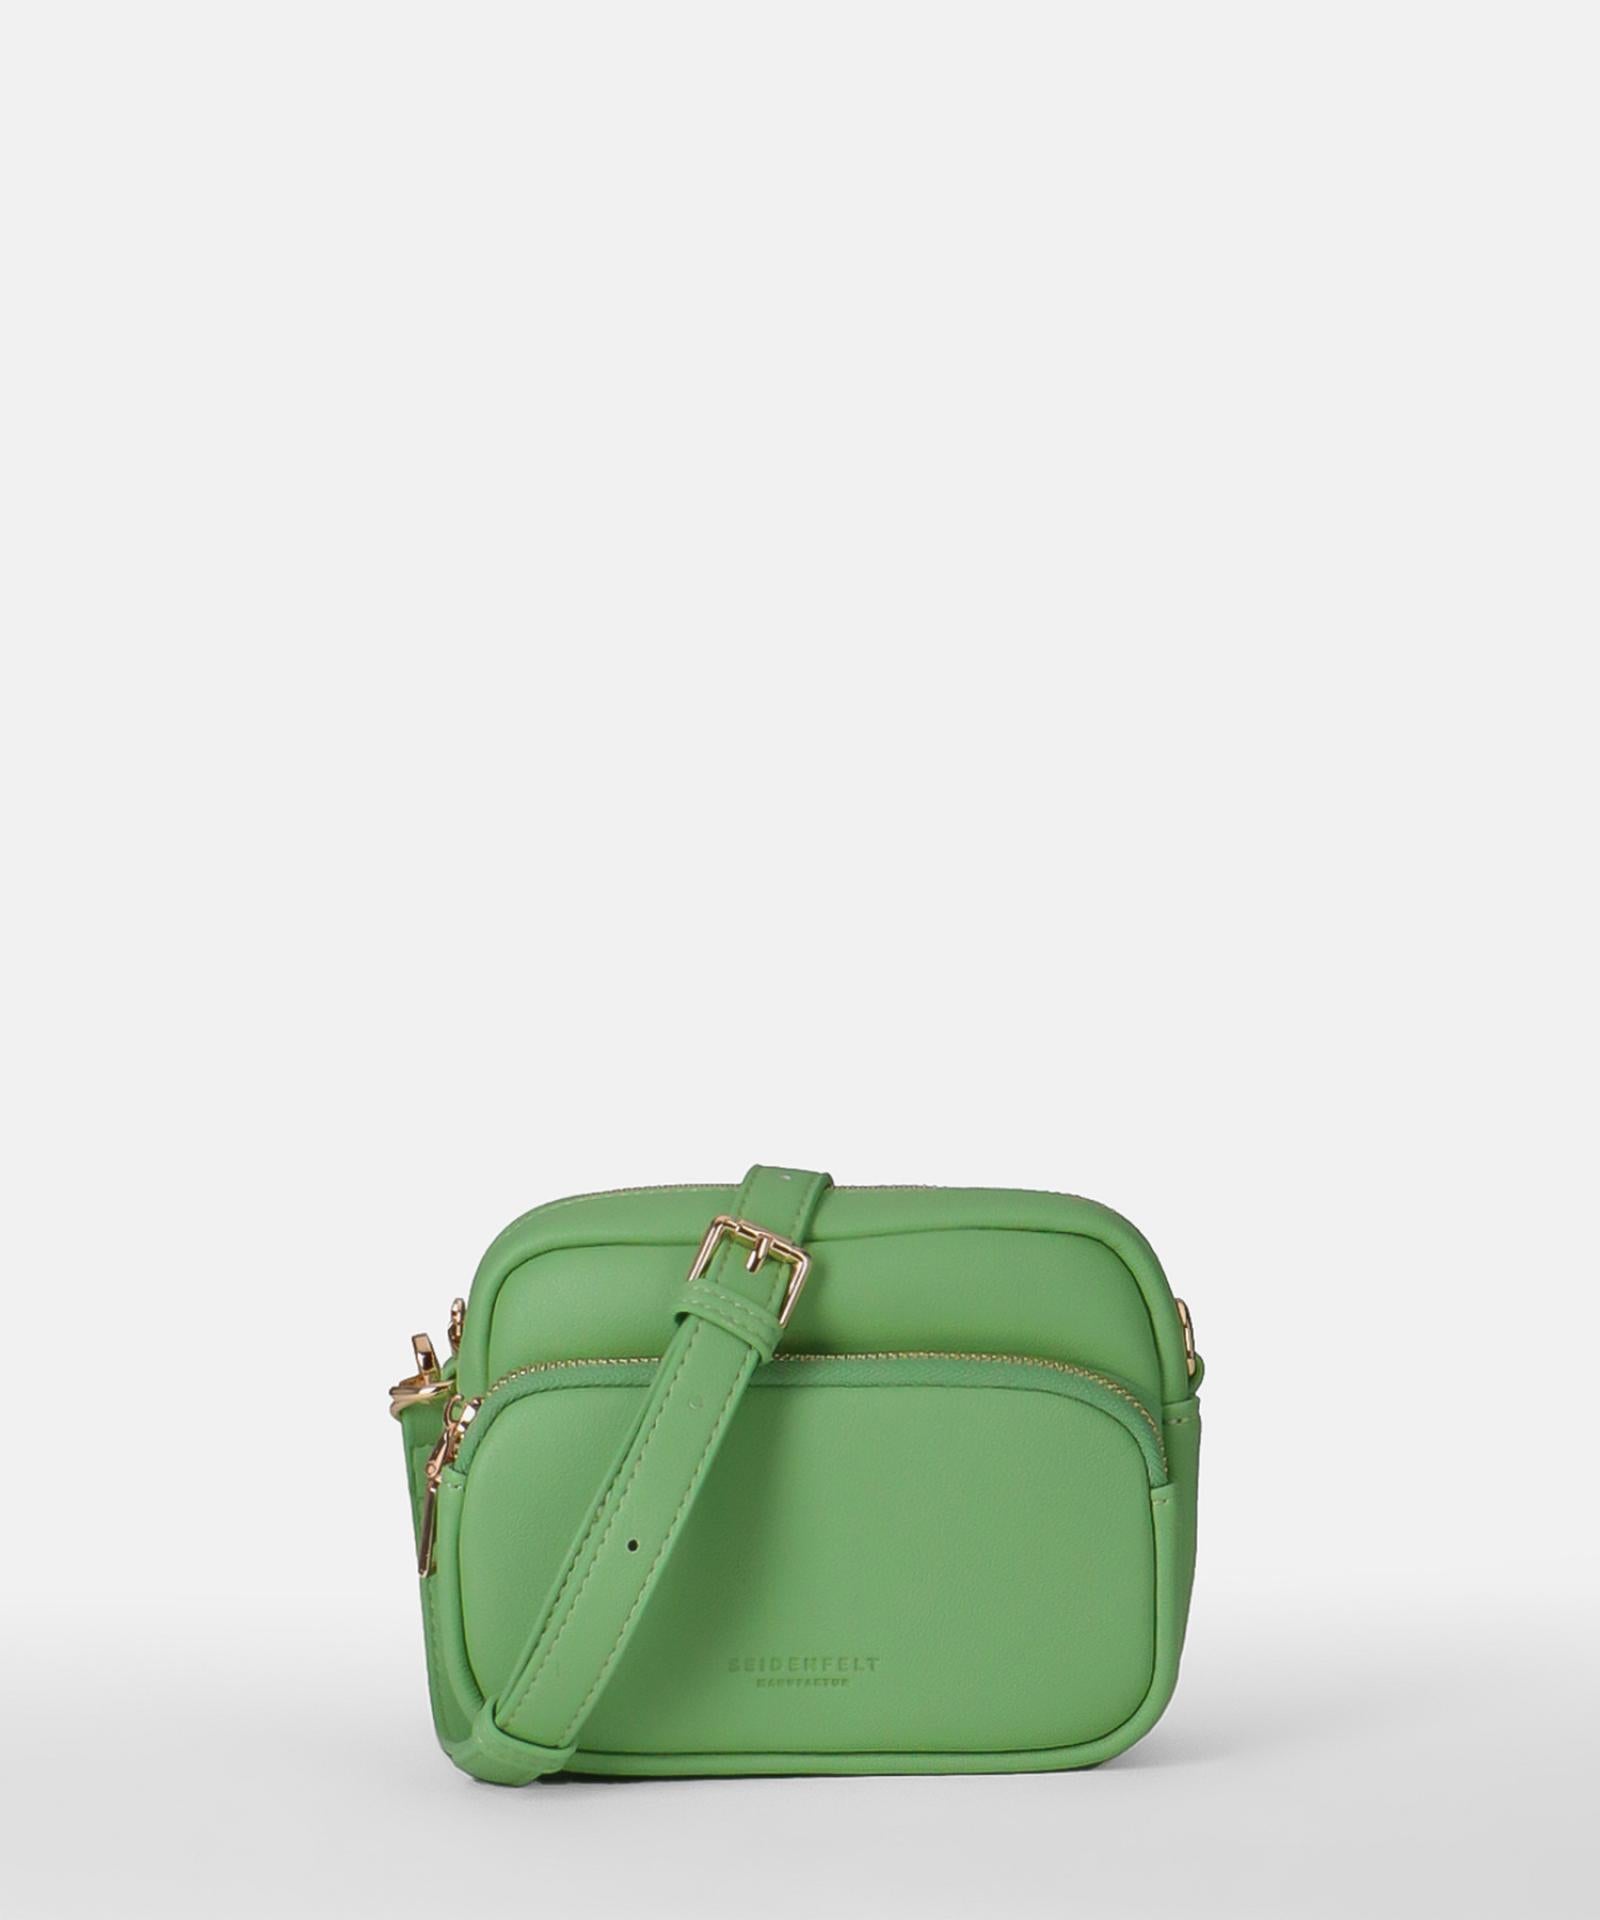 Seidenfelt Heby Small Bag matcha green/gold